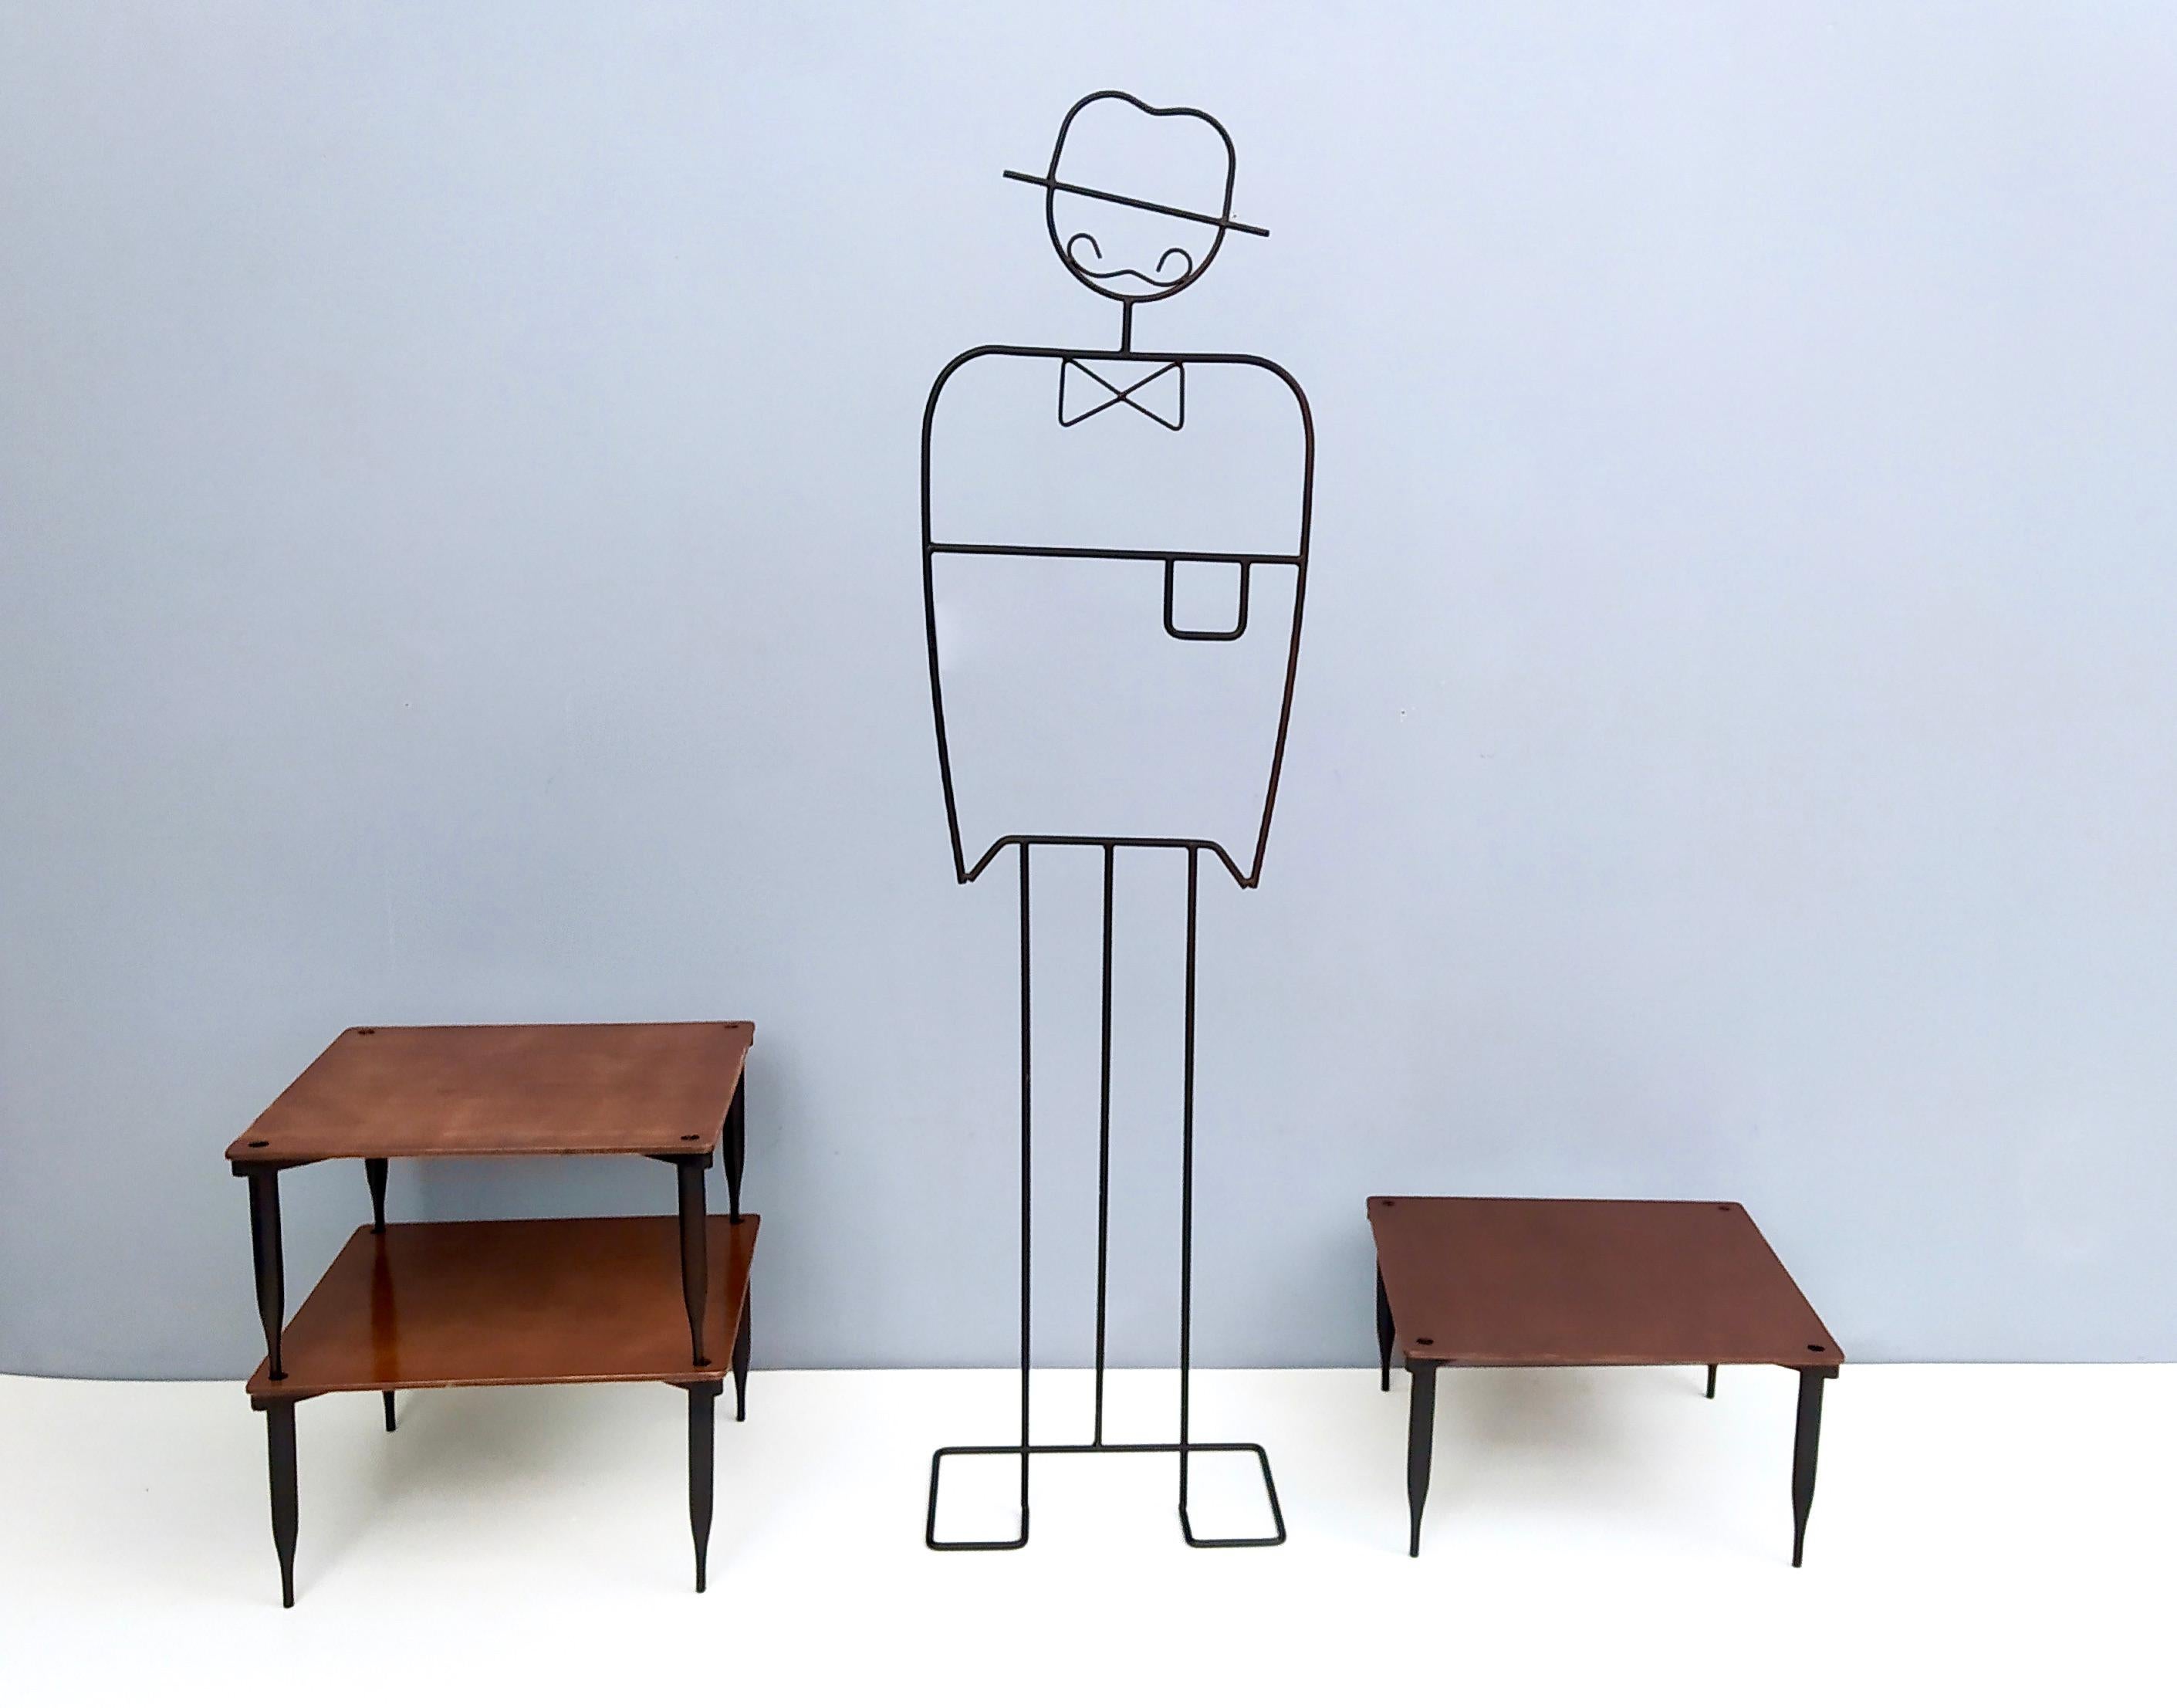 Fabriqué en Italie, 1954.
Il s'agit de tables basses empilables, modèle T8, conçues par Vico Magistretti et produites par Azucena, Milan (Italie), en 1954. 
Elles présentent un cadre en hêtre ébonisé et un plateau en noyer.
Ces tables basses sont